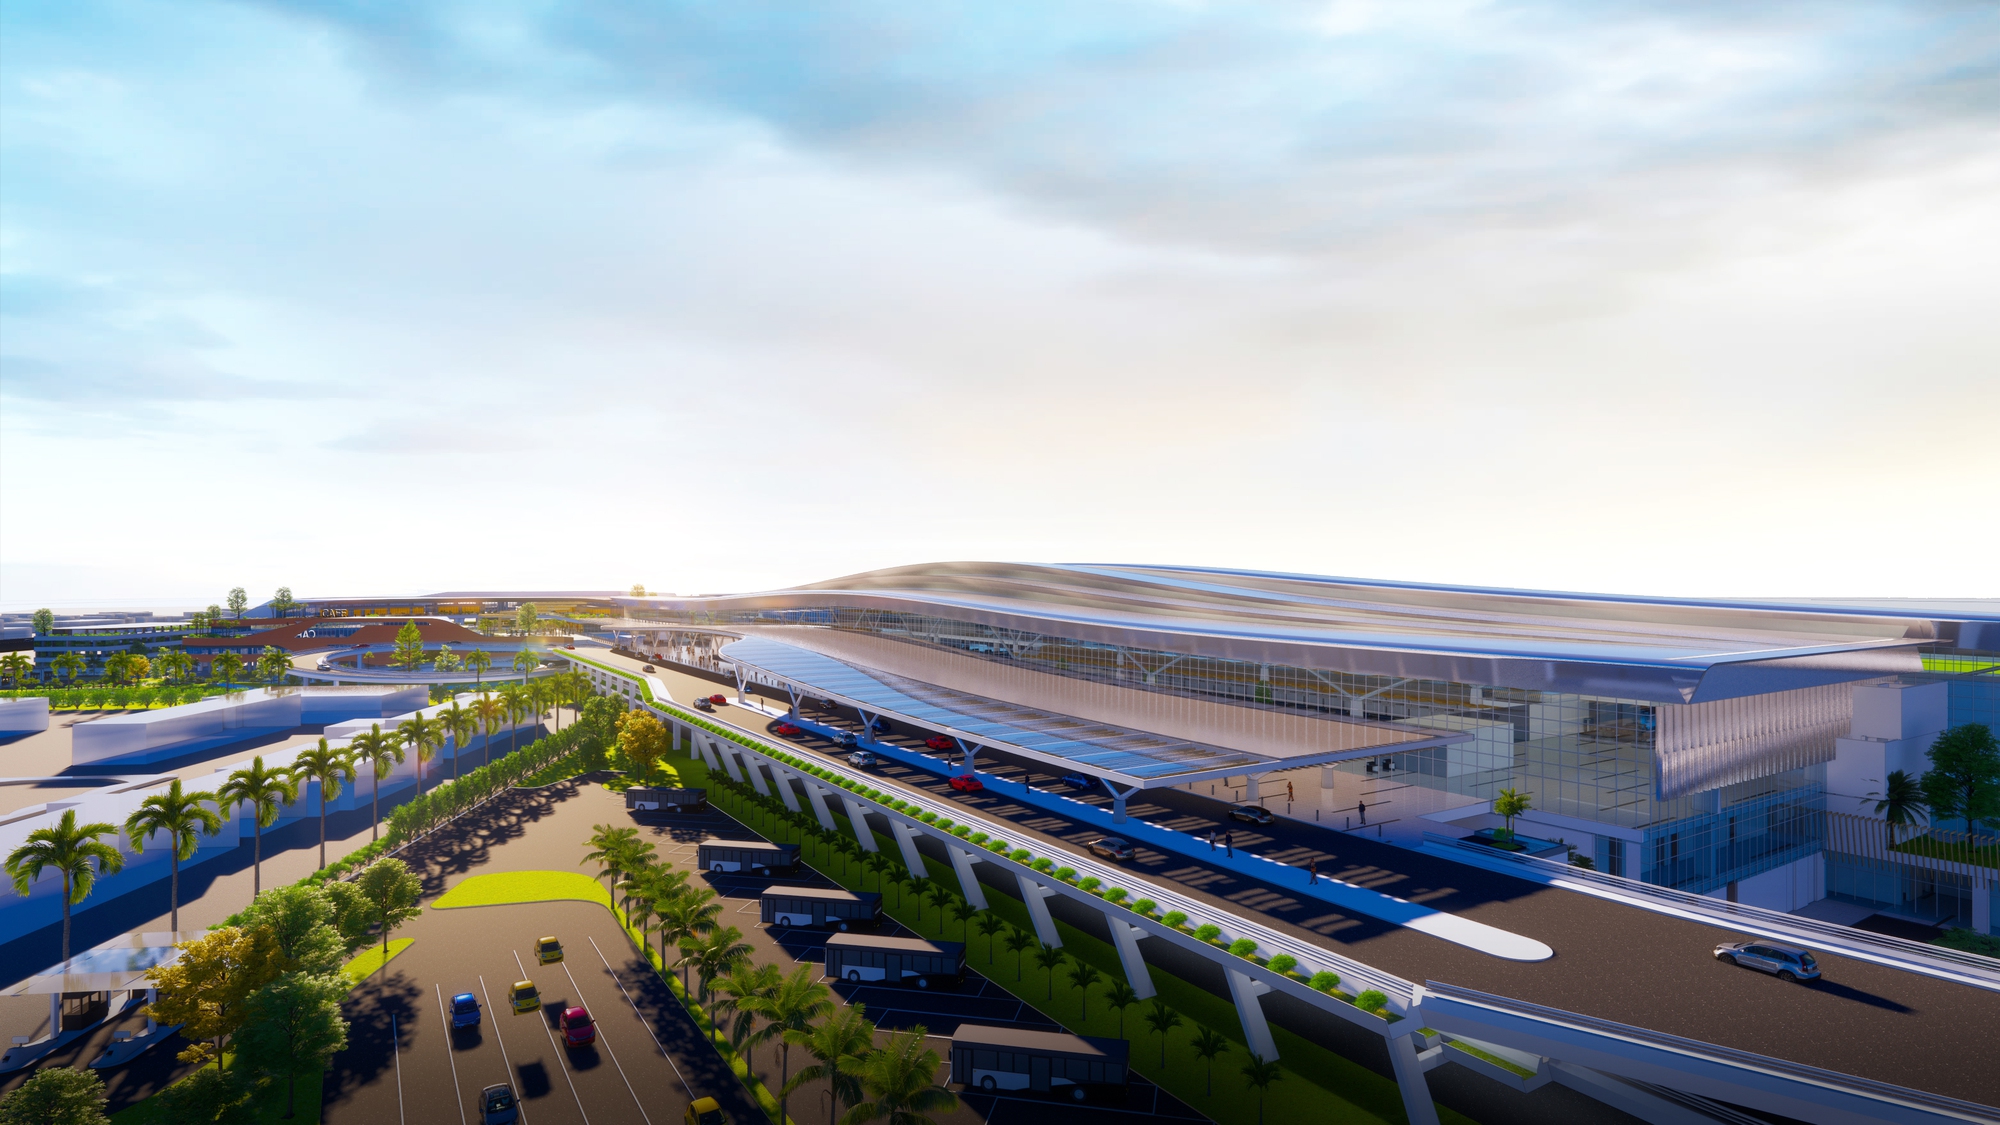 Hé lộ thiết kế nhà ga T3 sân bay Tân Sơn Nhất có gì đặc biệt? - Ảnh 1.